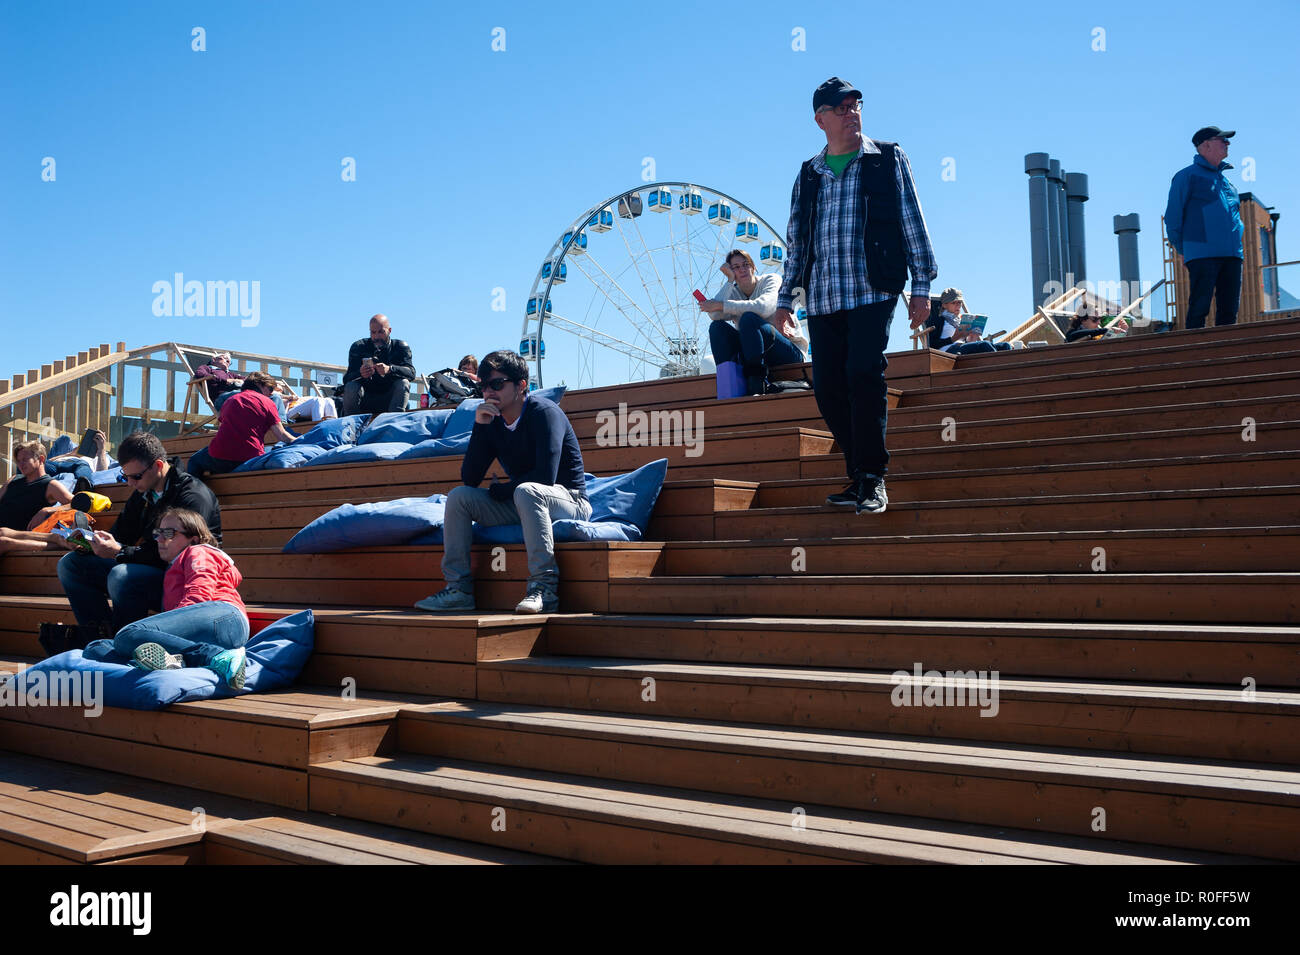 23.06.2018 - Helsinki, Finlande, Europe - Les gens s'asseoir sur l'escalier qui mène à la terrasse de la mer. Piscine d'Allas Banque D'Images